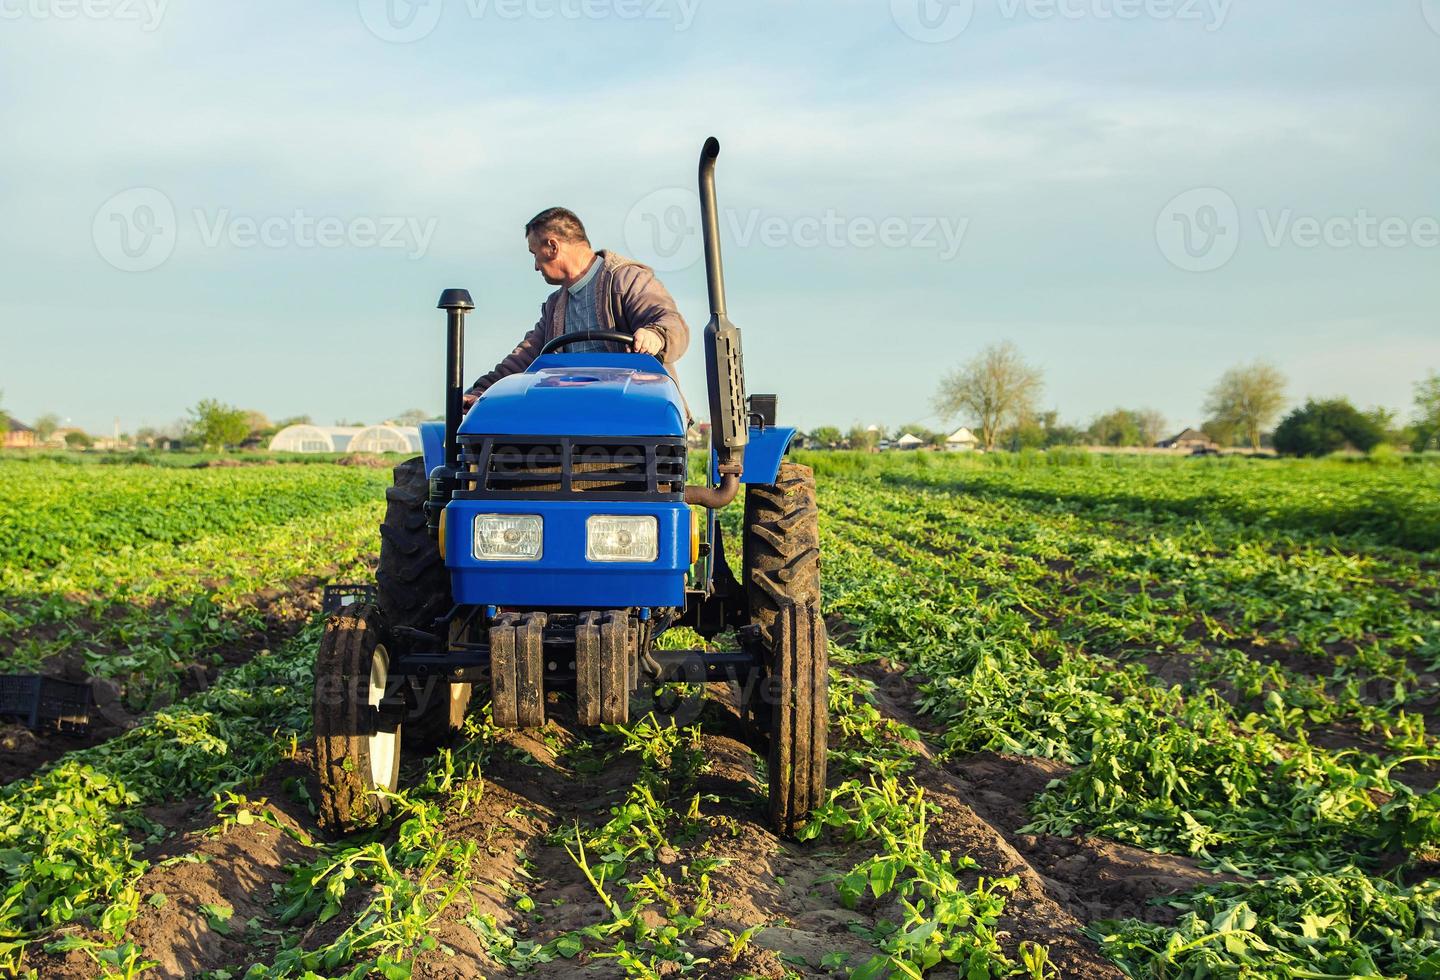 en jordbrukare enheter en traktor tvärs över de fält och skördar potatisar. skörda först potatisar i tidigt vår. jordbruk och jordbruksmark. agro industri och jordbruksnäring. Stöd för gårdar. skörd foto